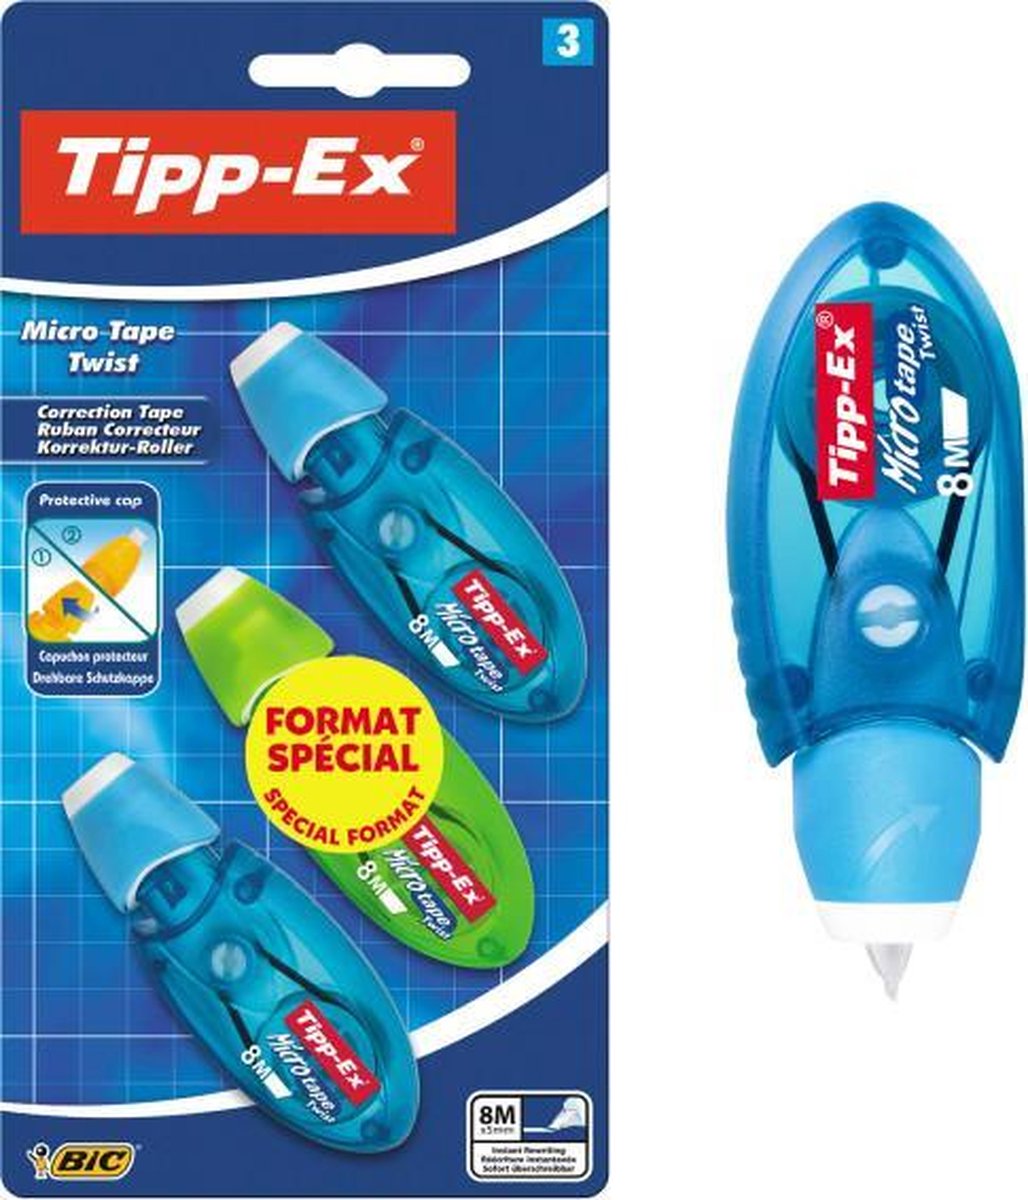 Tipp-Ex Micro Tape Twist Correctieroller - 3 stuks - Kleur willekeurig - Tipp-Ex